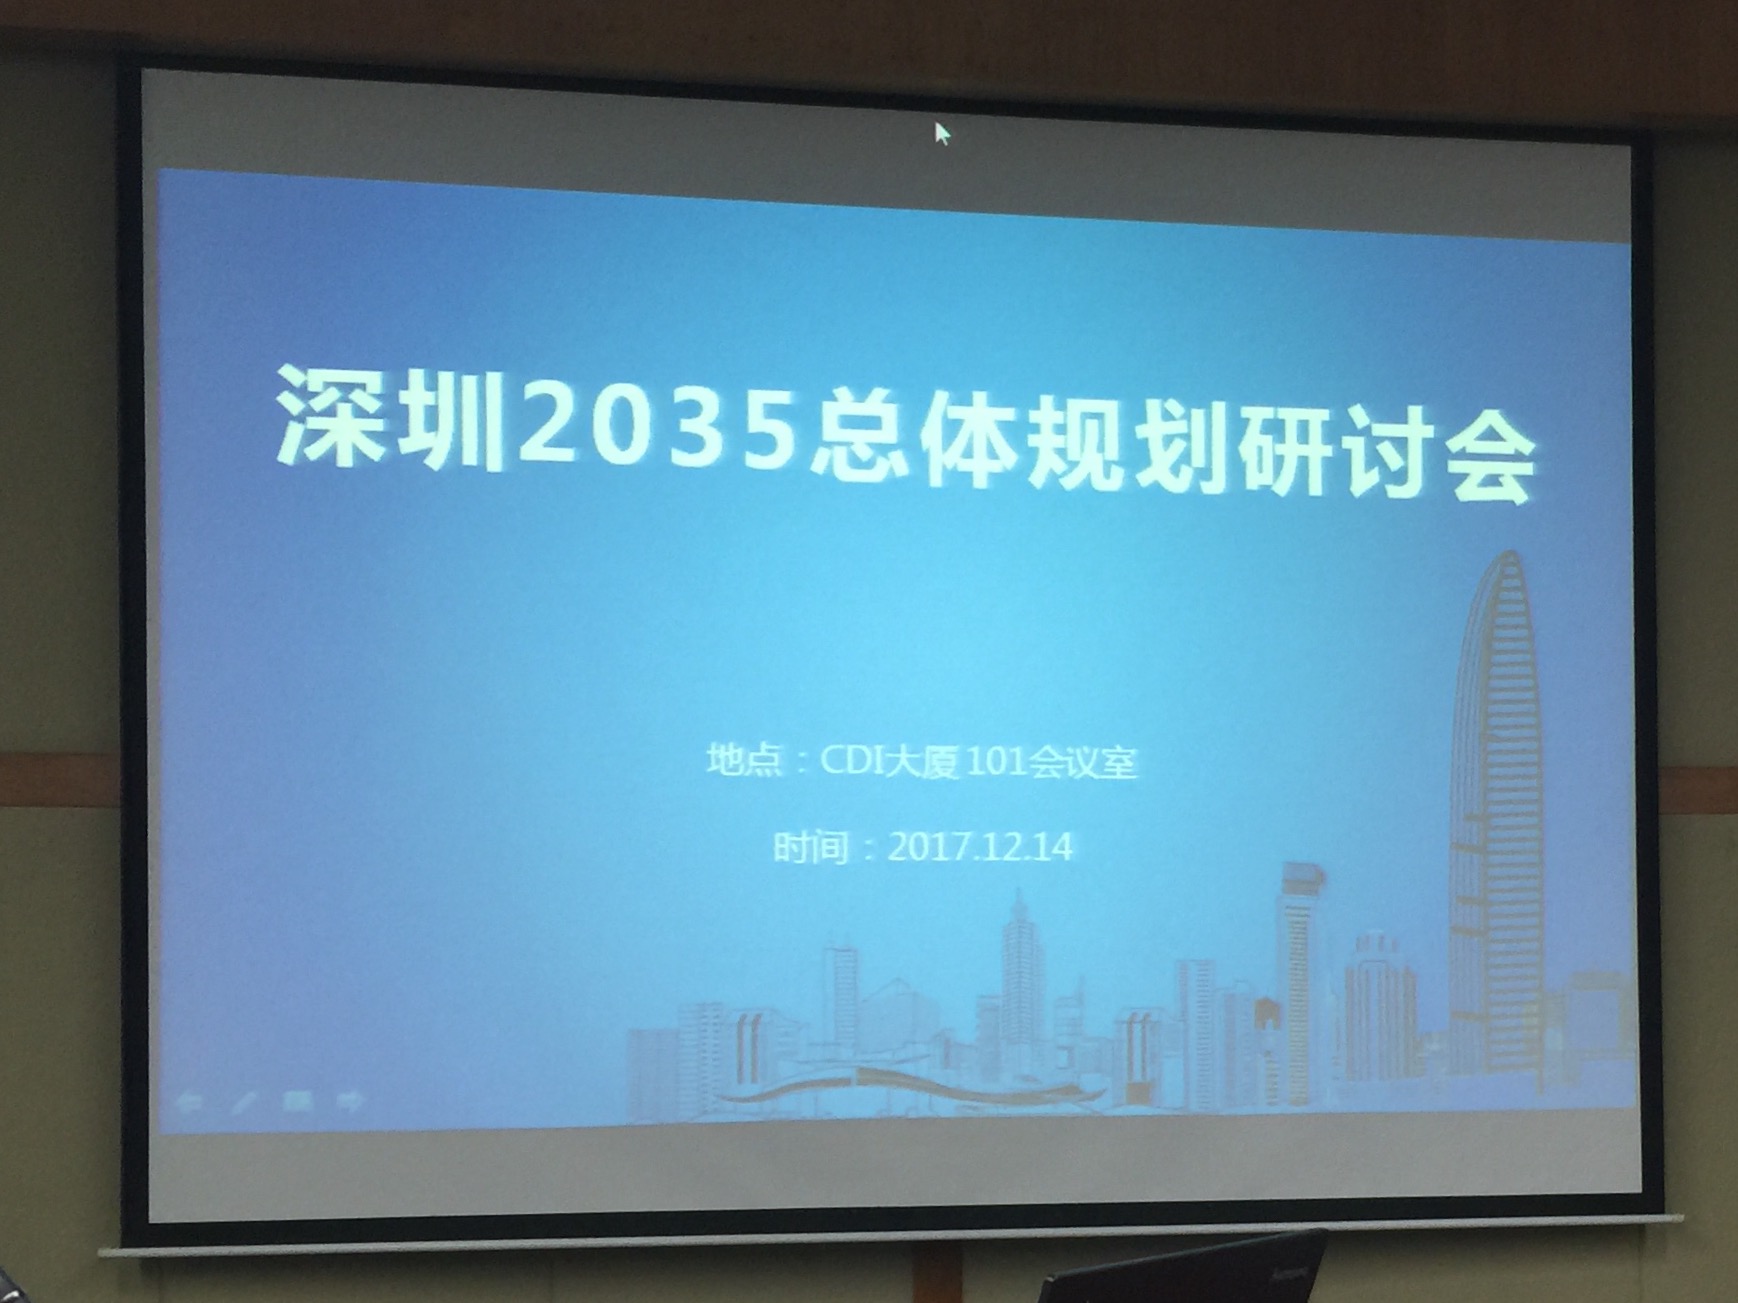 大成律师参加深圳总体规划研讨会建言设立“法治公园”